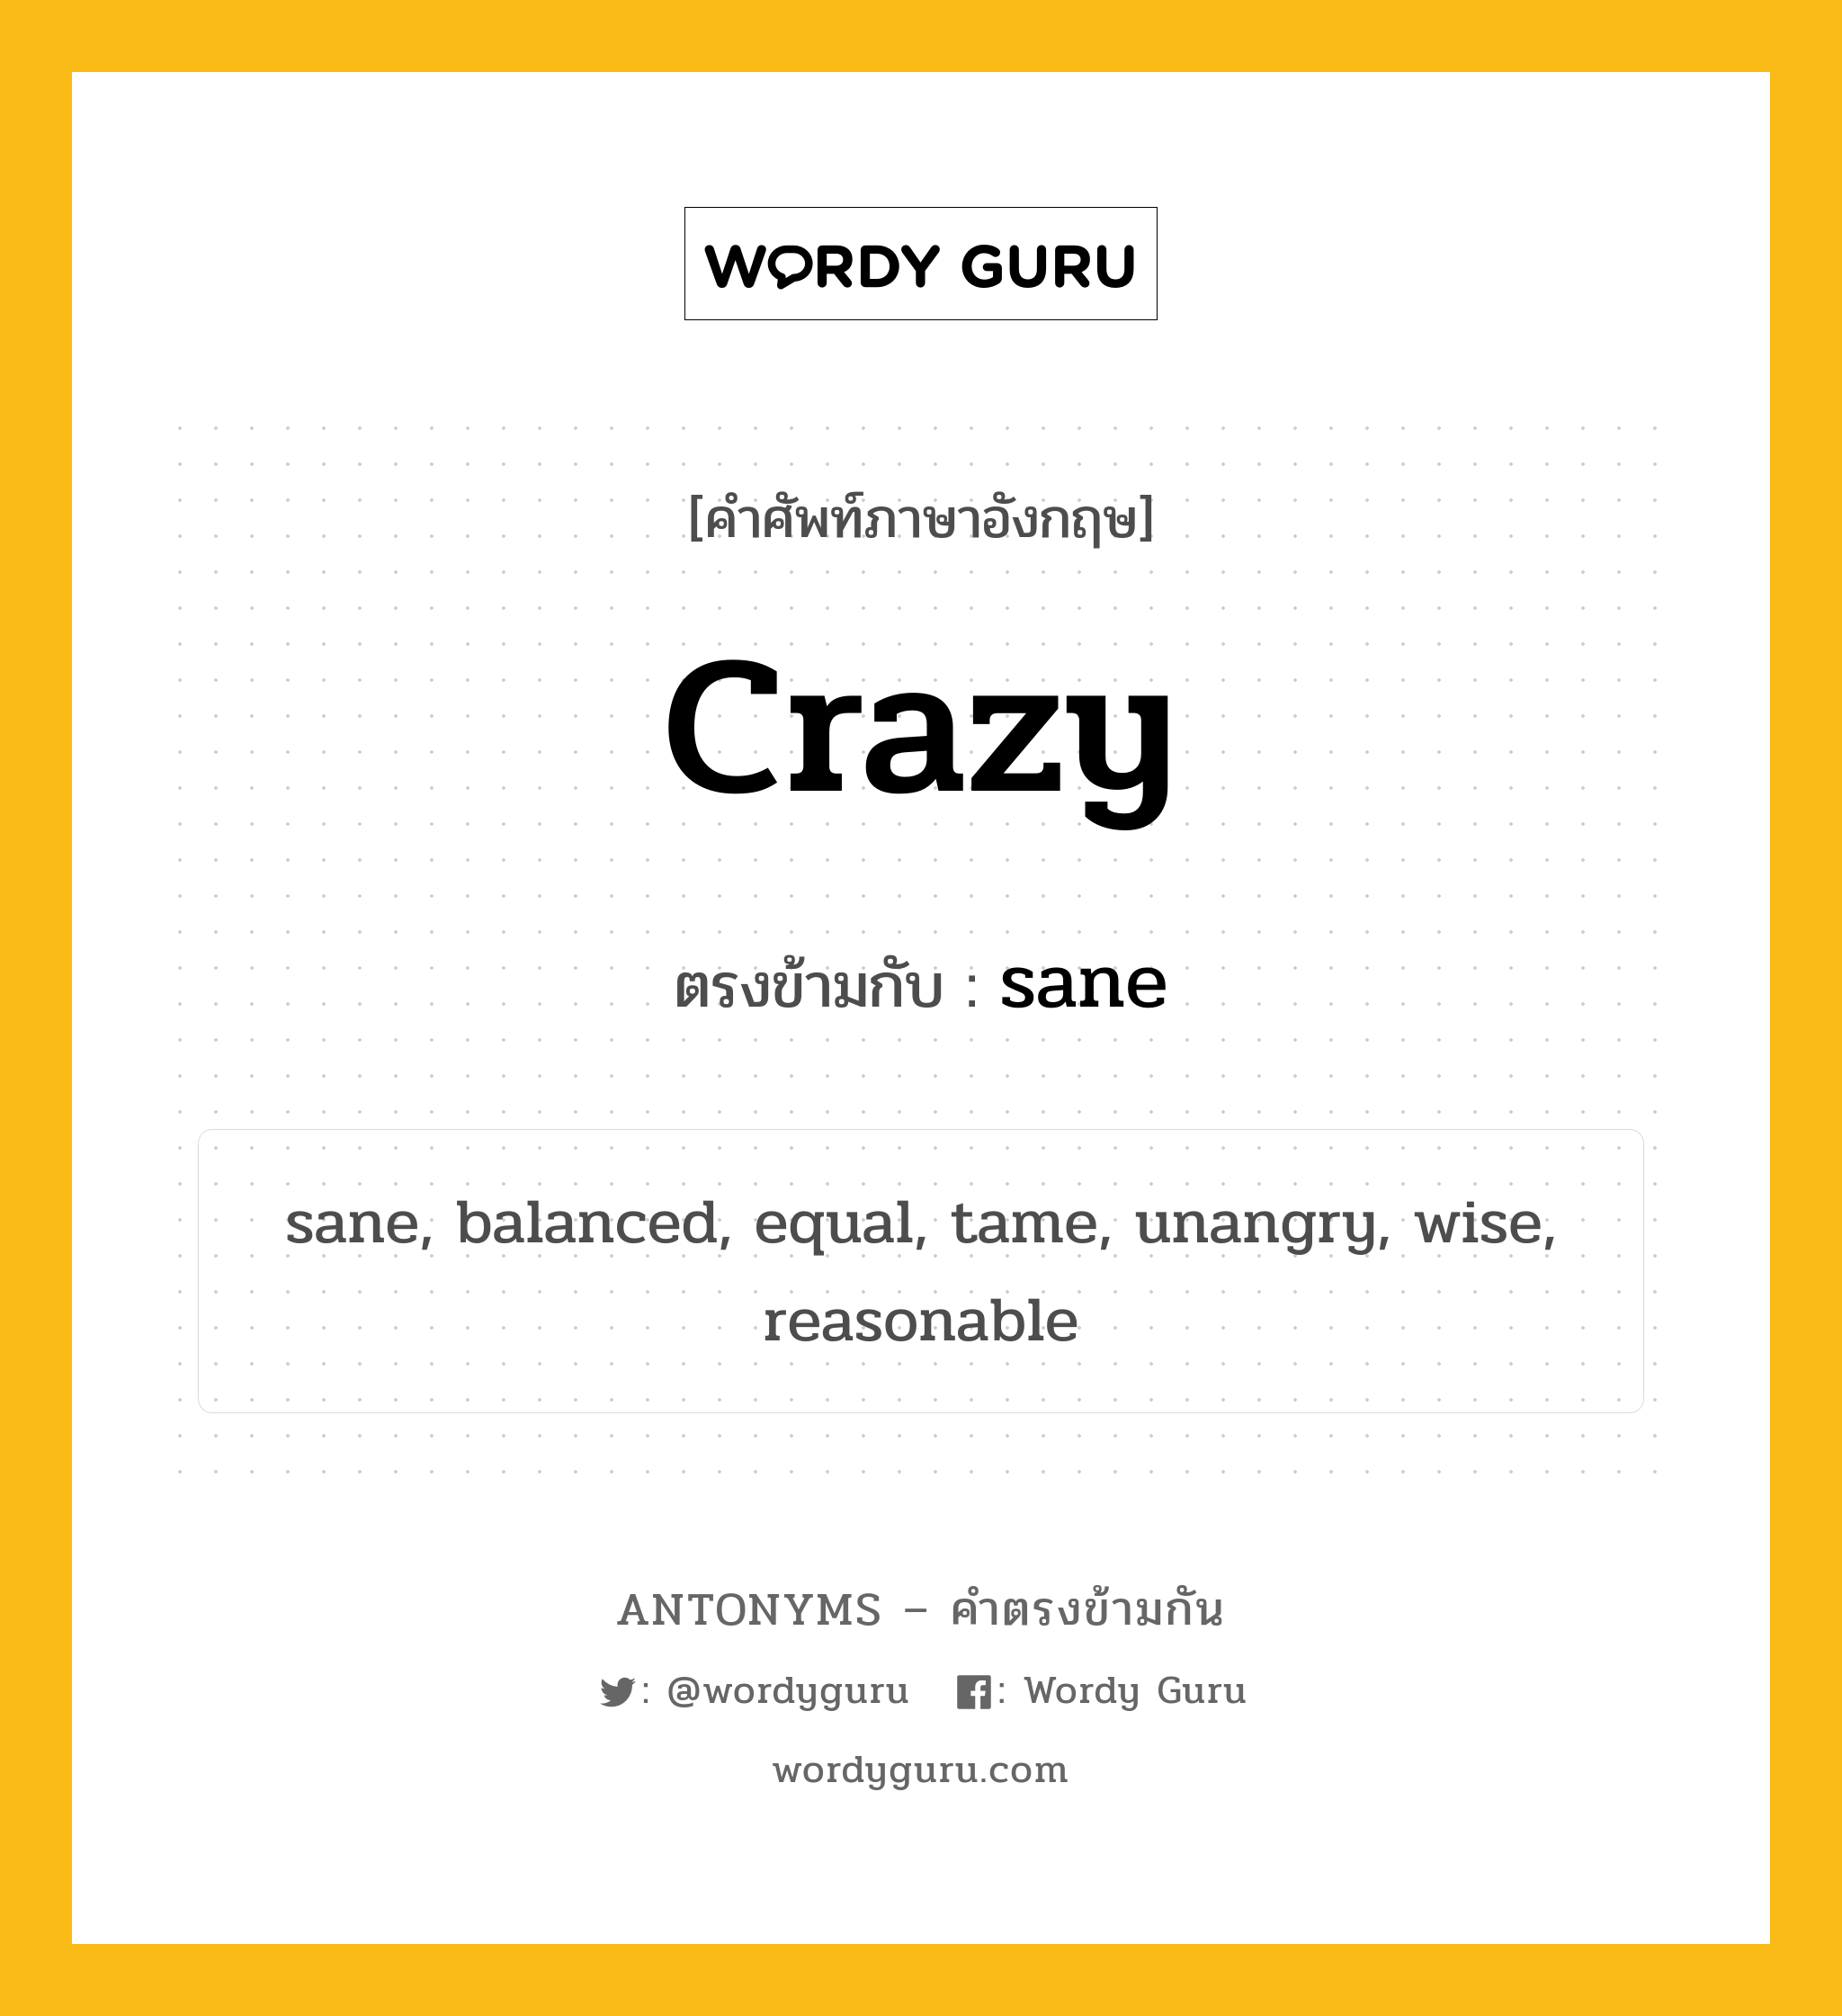 crazy เป็นคำตรงข้ามกับคำไหนบ้าง?, คำศัพท์ภาษาอังกฤษ crazy ตรงข้ามกับ sane หมวด sane